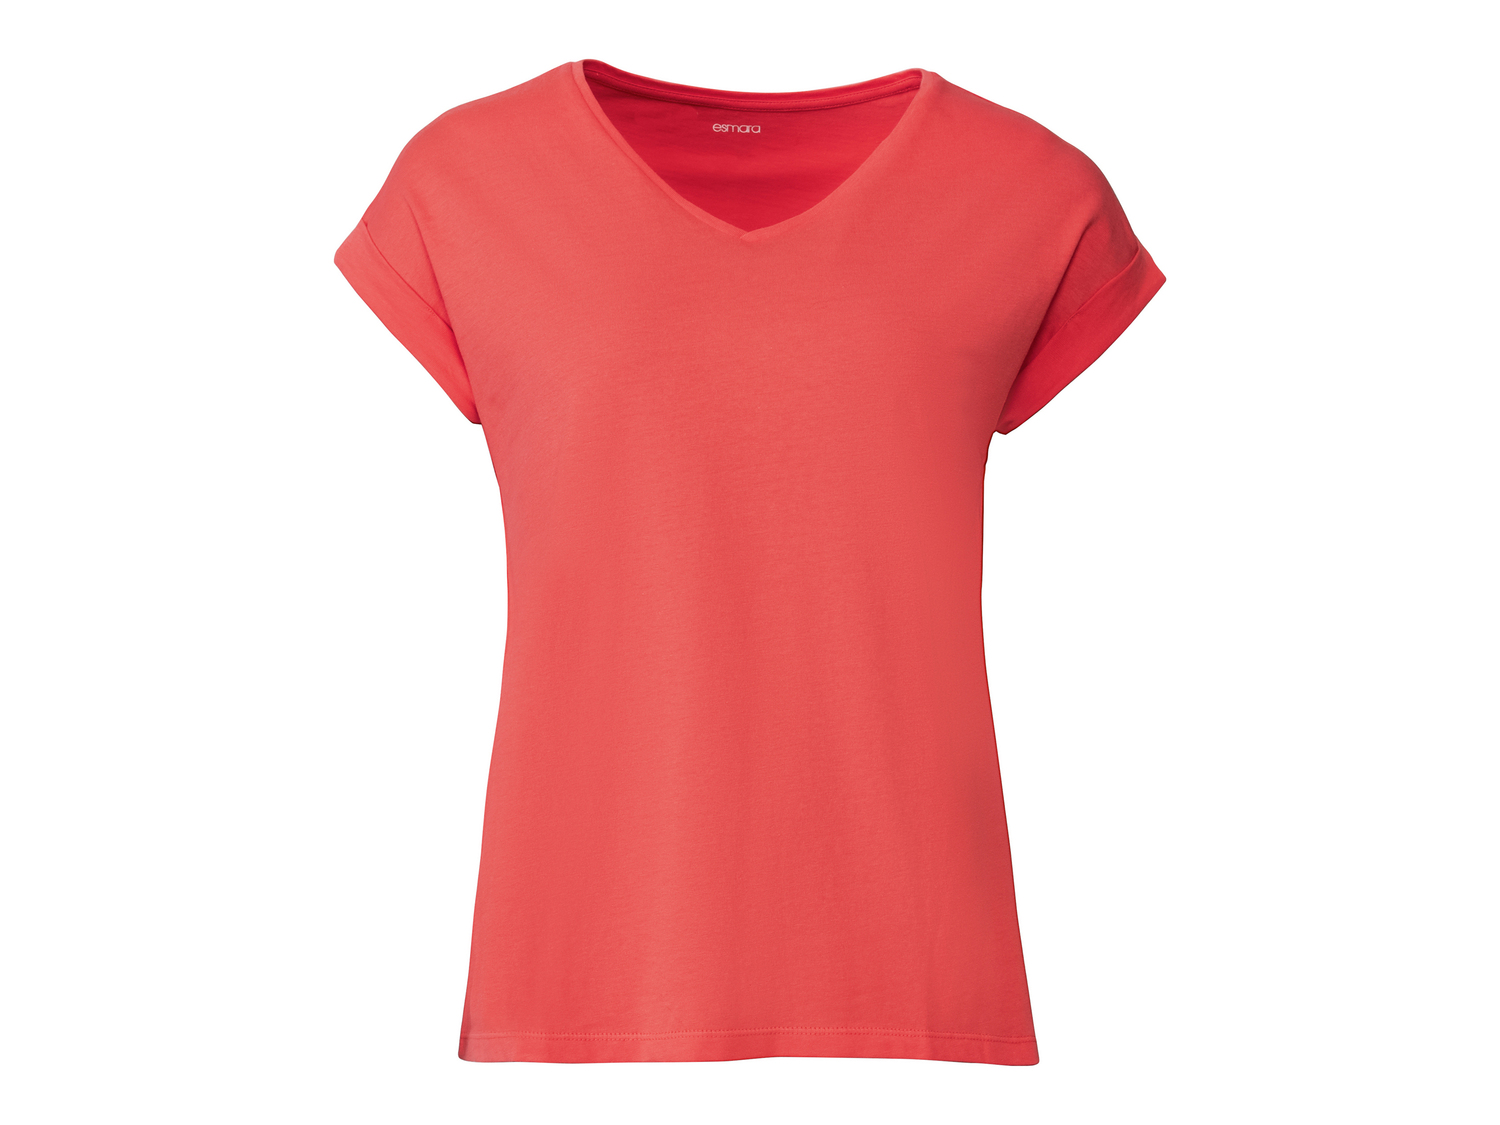 T-Shirt da donna Esmara, prezzo 4.99 &#8364; 
Misure: S-L
Taglie disponibili

Caratteristiche

- ...